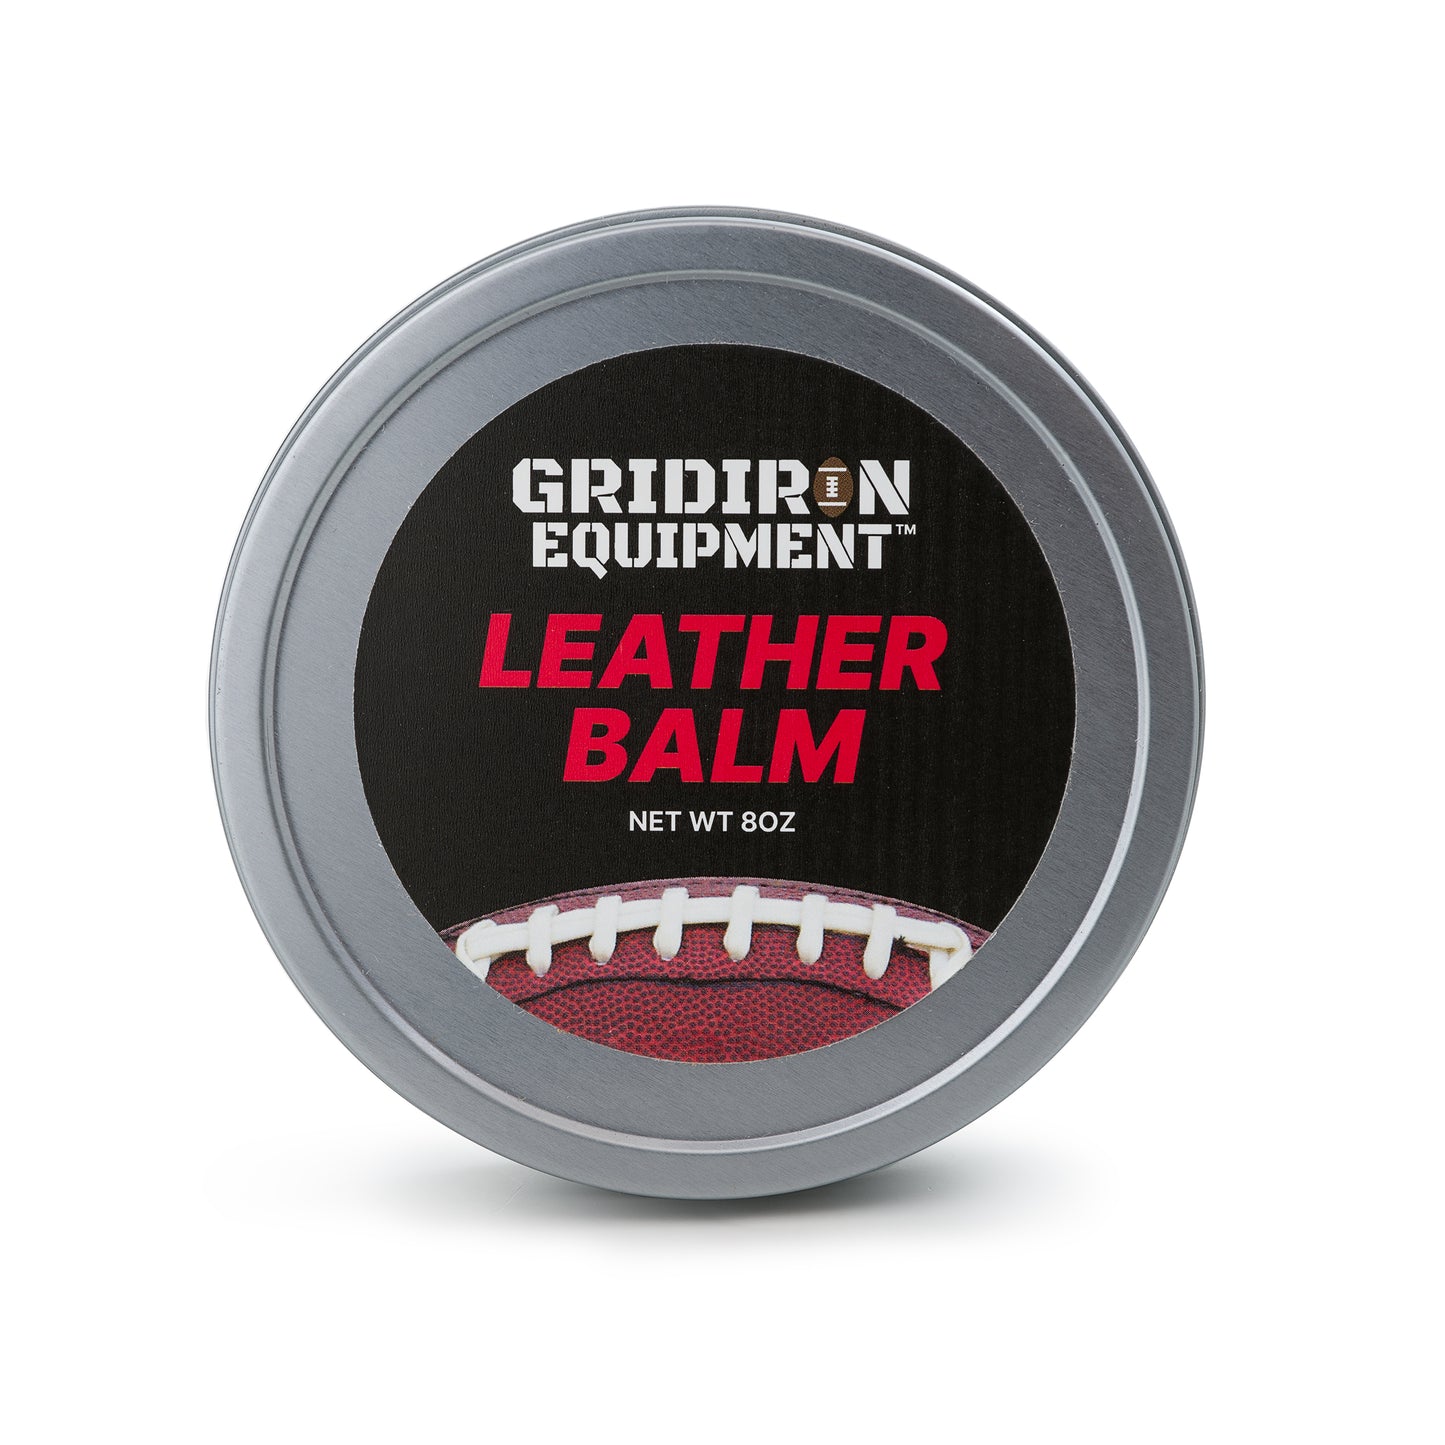 Leather Balm Tin